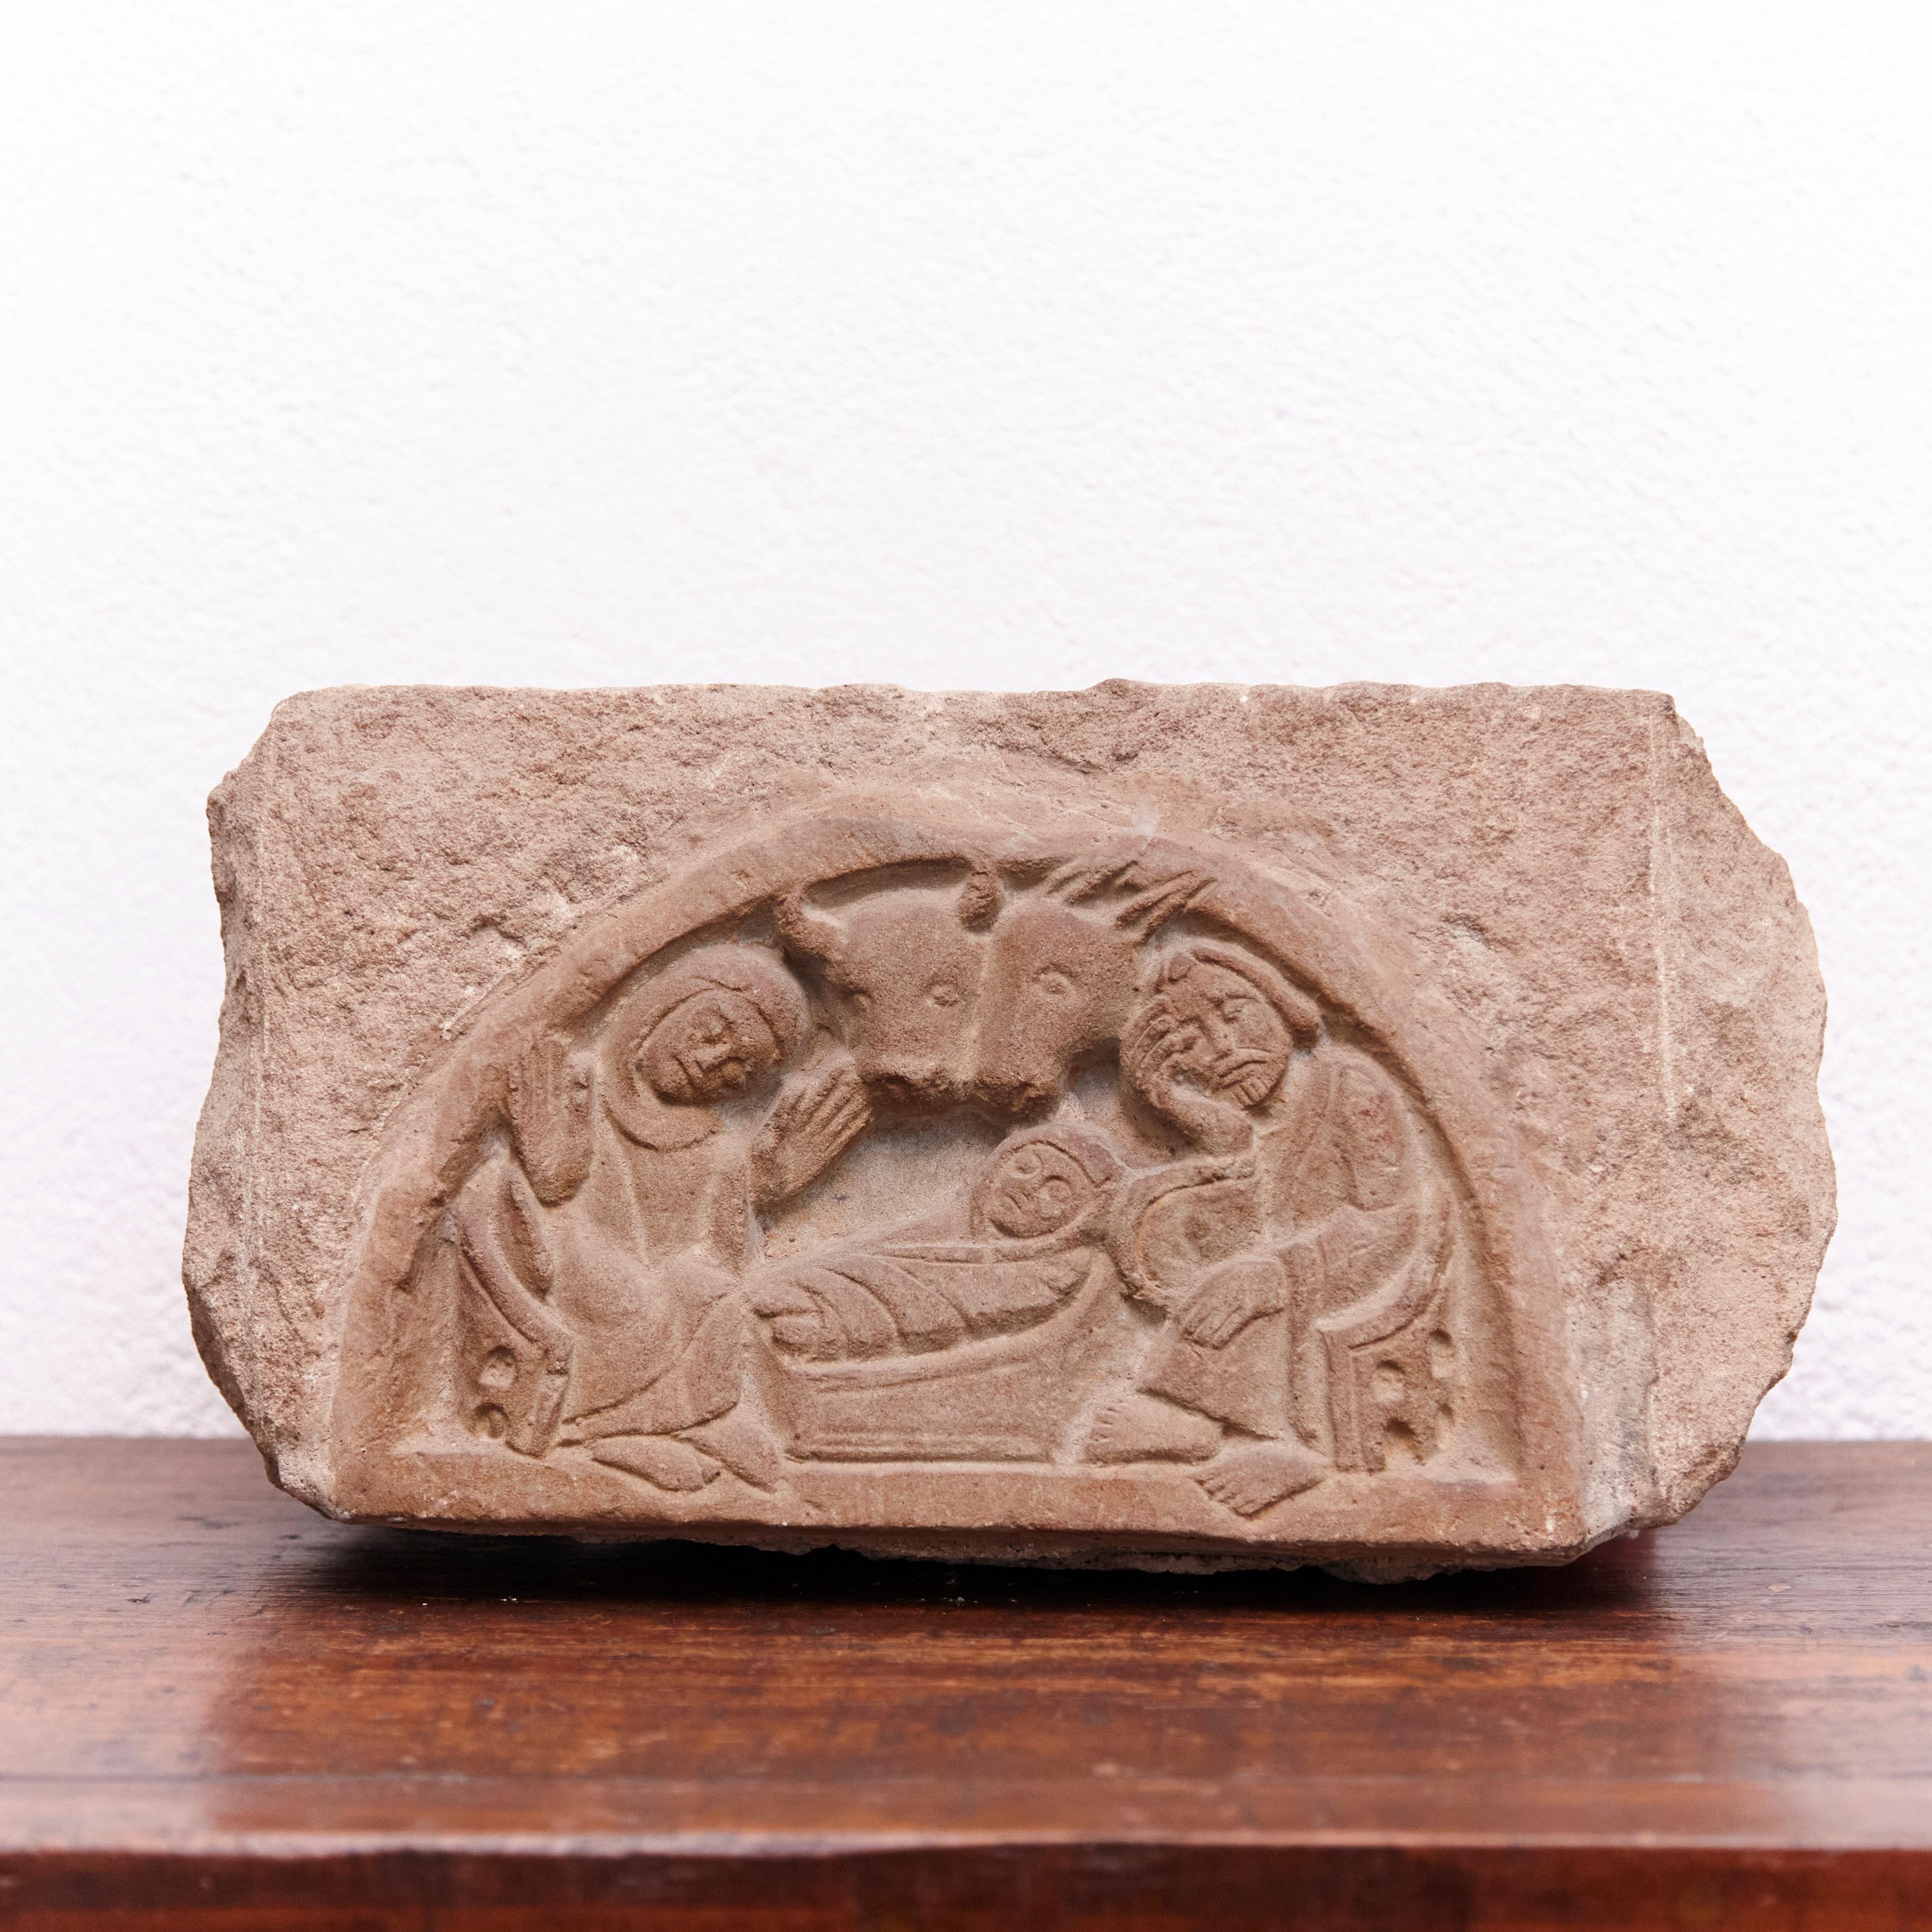 Nativity graviert Stein Skulptur von unbekannten hergestellt aus Spanien um 1930

Im Originalzustand, mit geringen alters- und gebrauchsbedingten Gebrauchsspuren.